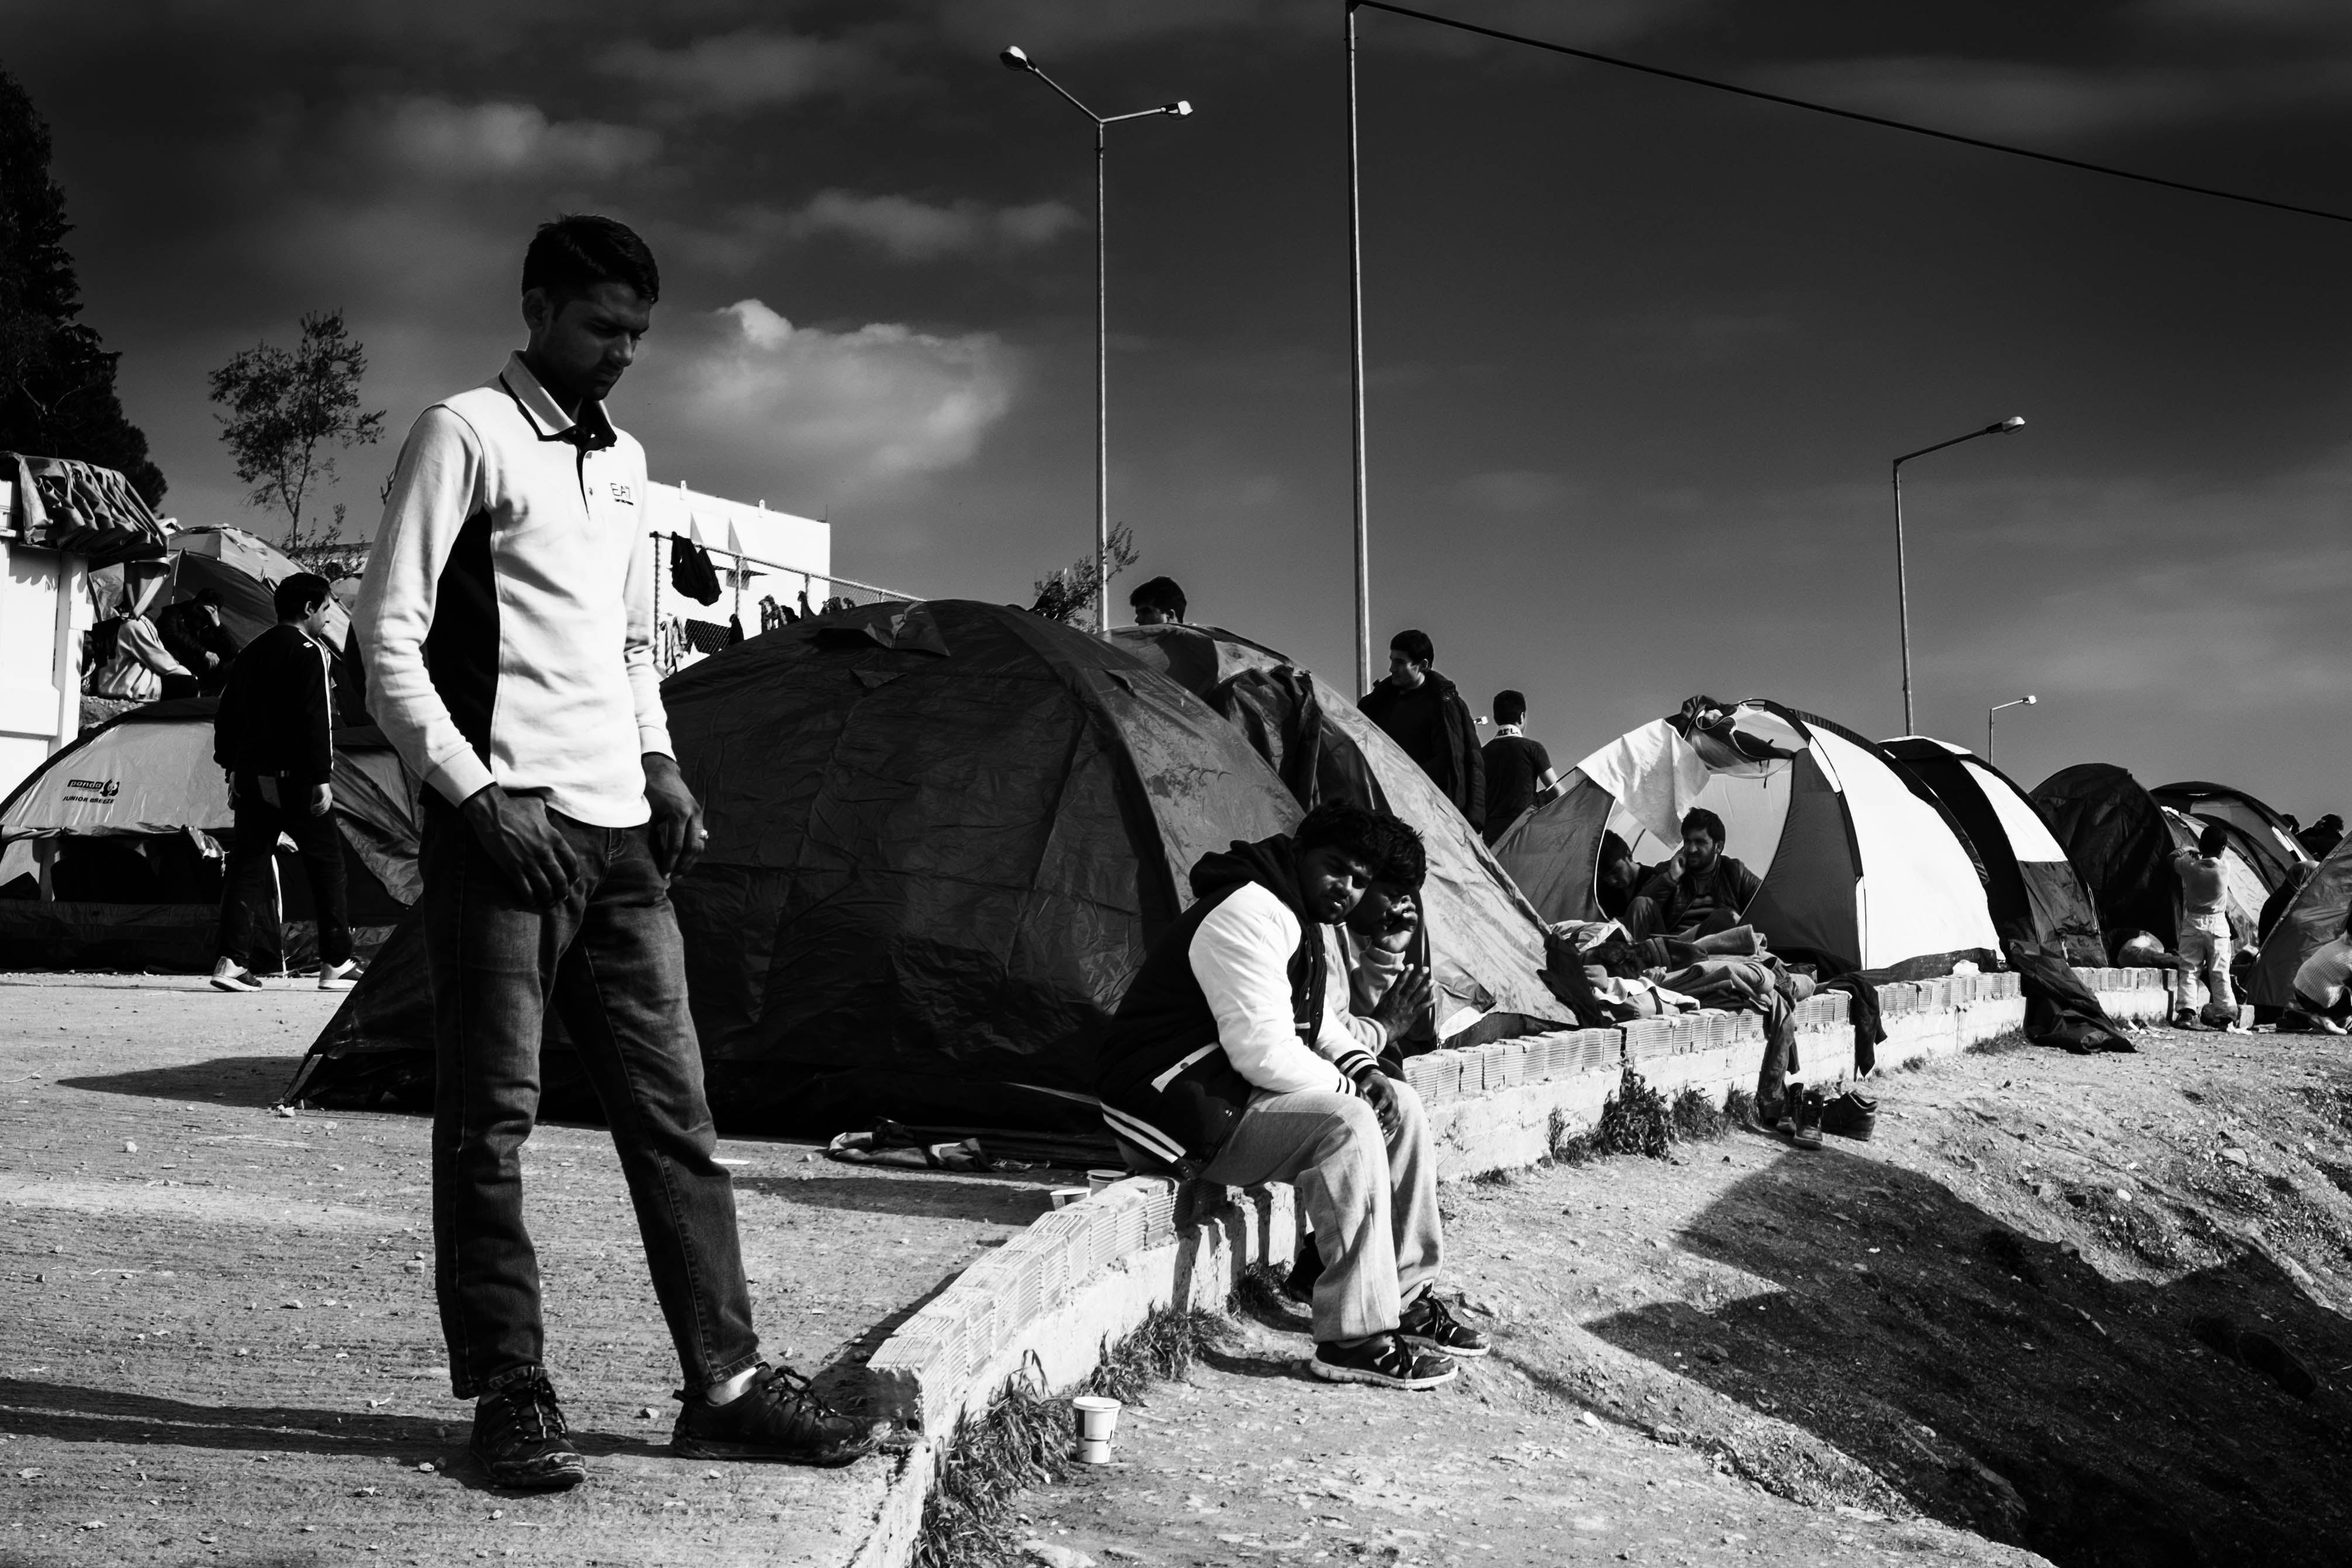 Des réfugiés dans le camp de Moria sur l'île de Lesbos le 30 janvier 2016 © Martin Leveneur